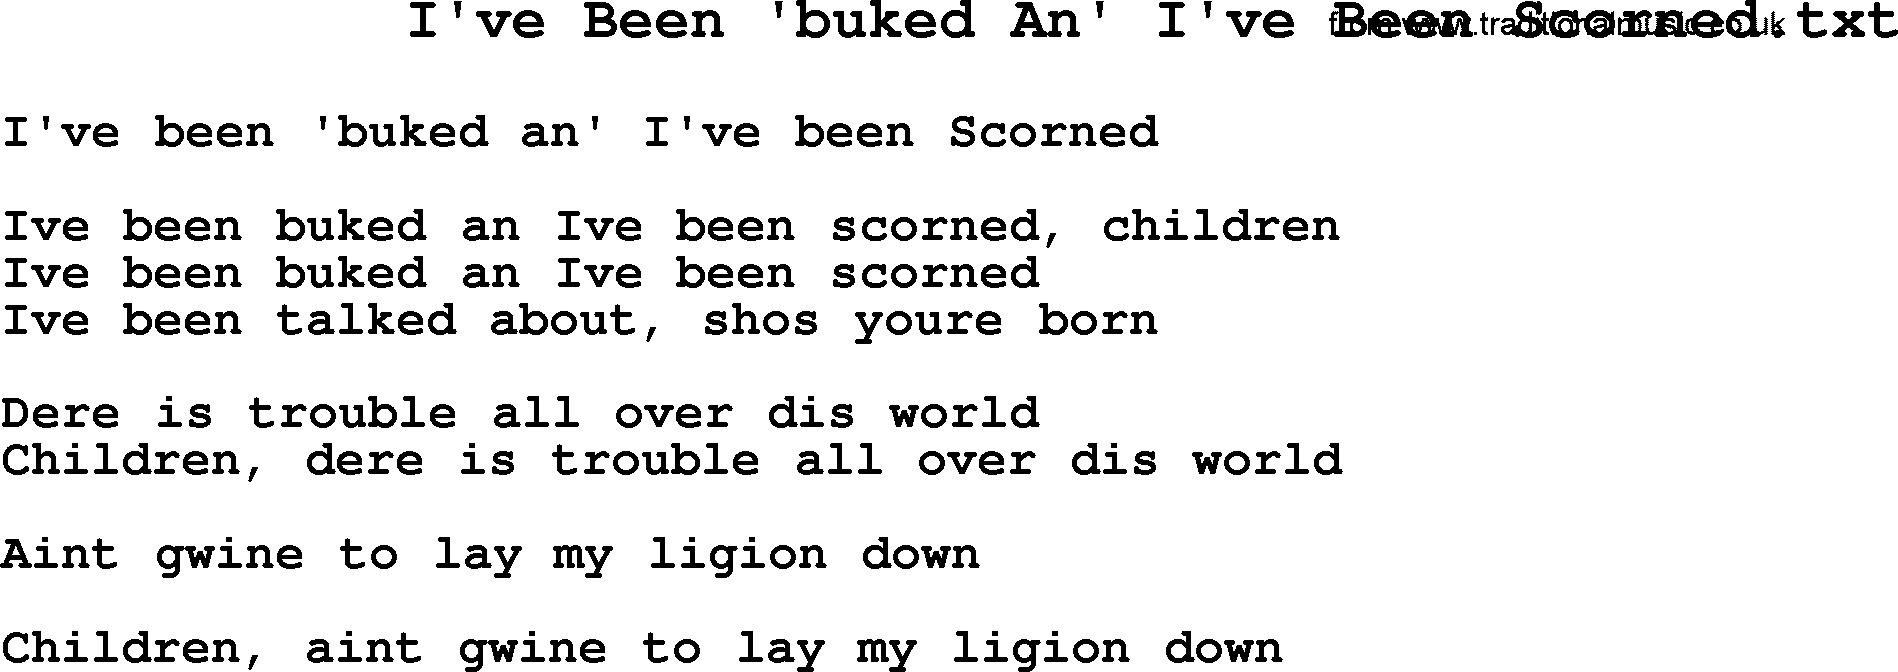 Negro Spiritual Song Lyrics for I've Been 'buked An' I've Been Scorned